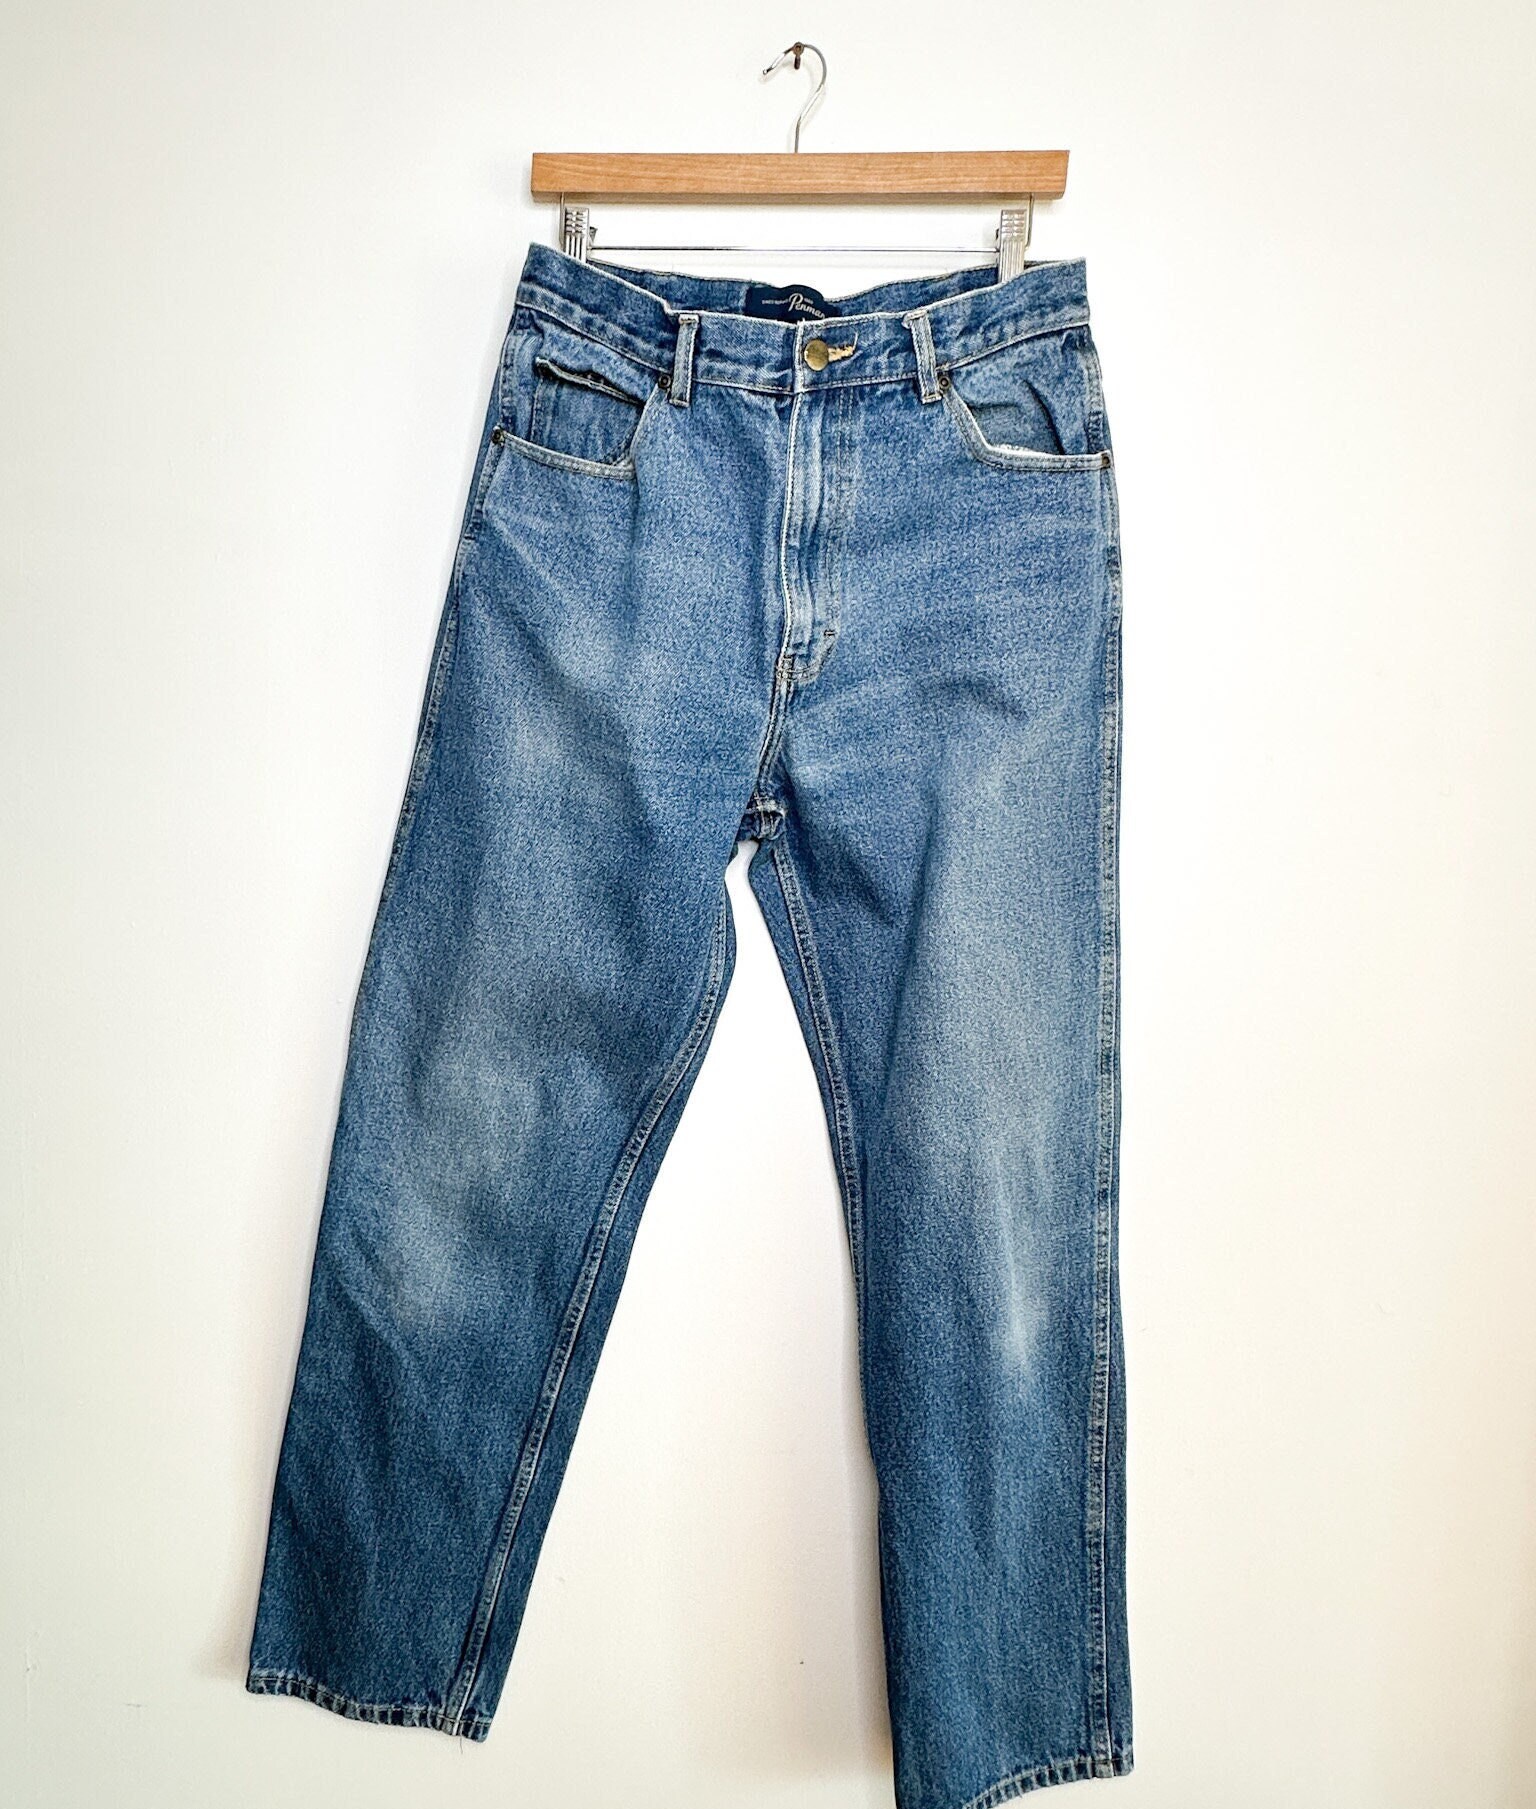 Jeans Homme Hommes Jeans Stretch Mode Gris Bleu Pantalon en Denim pour Homme  Printemps Et Automne Pantalon Rétro Casual Hommes Jeans Taille 27-36 36 B :  : Mode